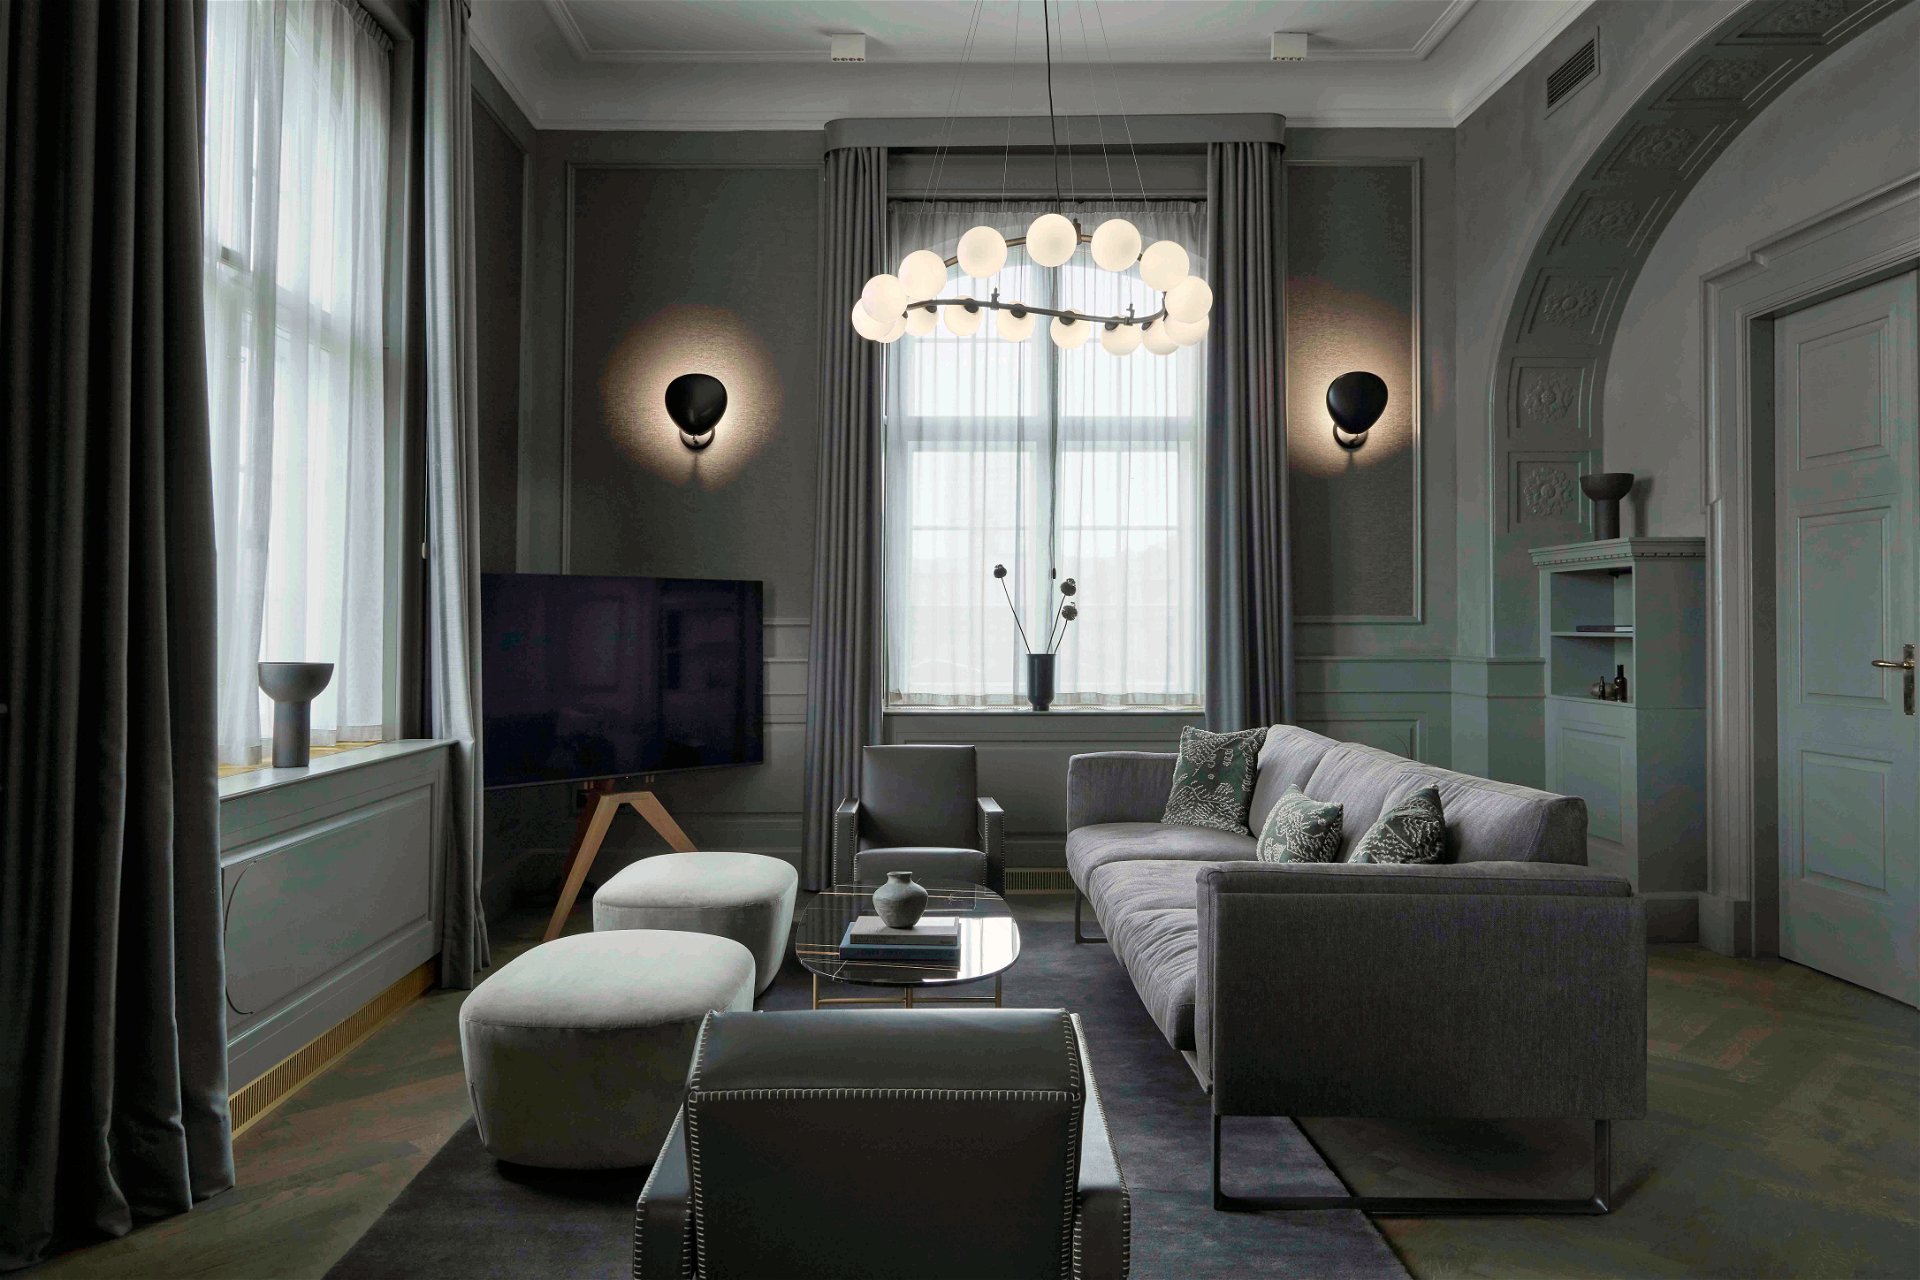 Schmuckstück: Die Gründer der dänischen Luxusmarke Shamballa Jewels, Mads & Mikkel Kornerup, und ihre hauseigene Designerin Olga Krukovskaya haben die exklusive Shamballa-Suite entworfen. Insgesamt neun einzigartige Suiten gibt es im Hotel zu buchen.